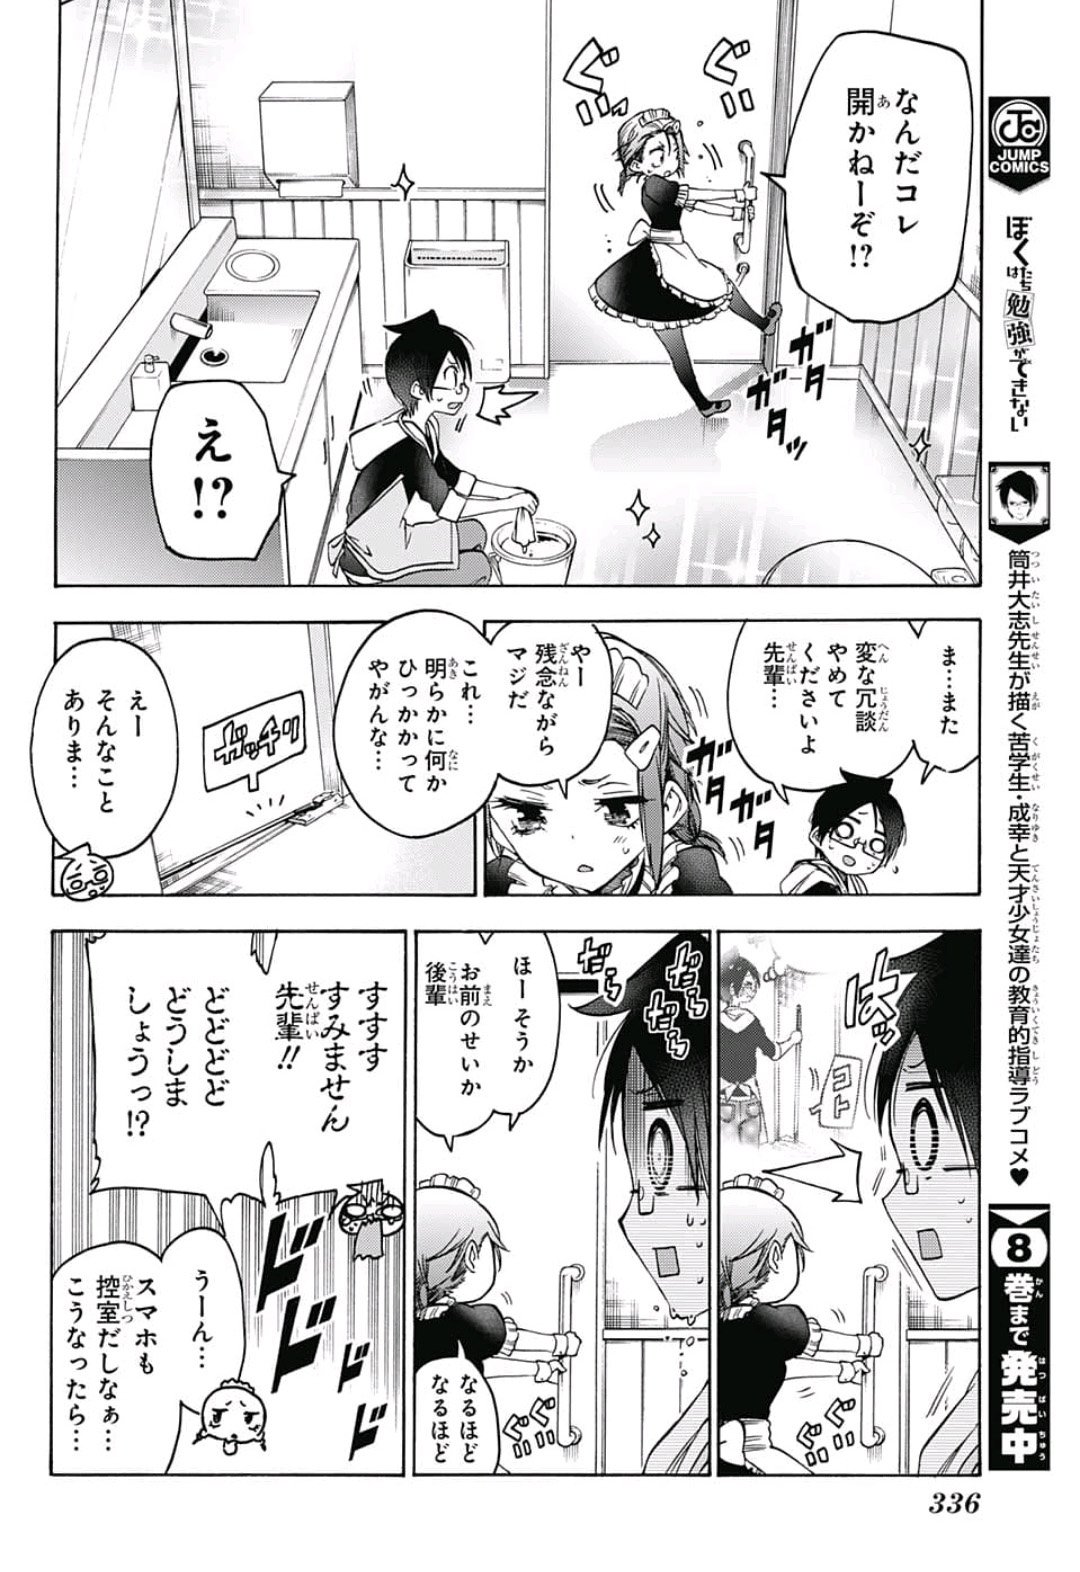 Bokutachi wa Benkyou ga Dekinai - Chapter 82 - Page 4